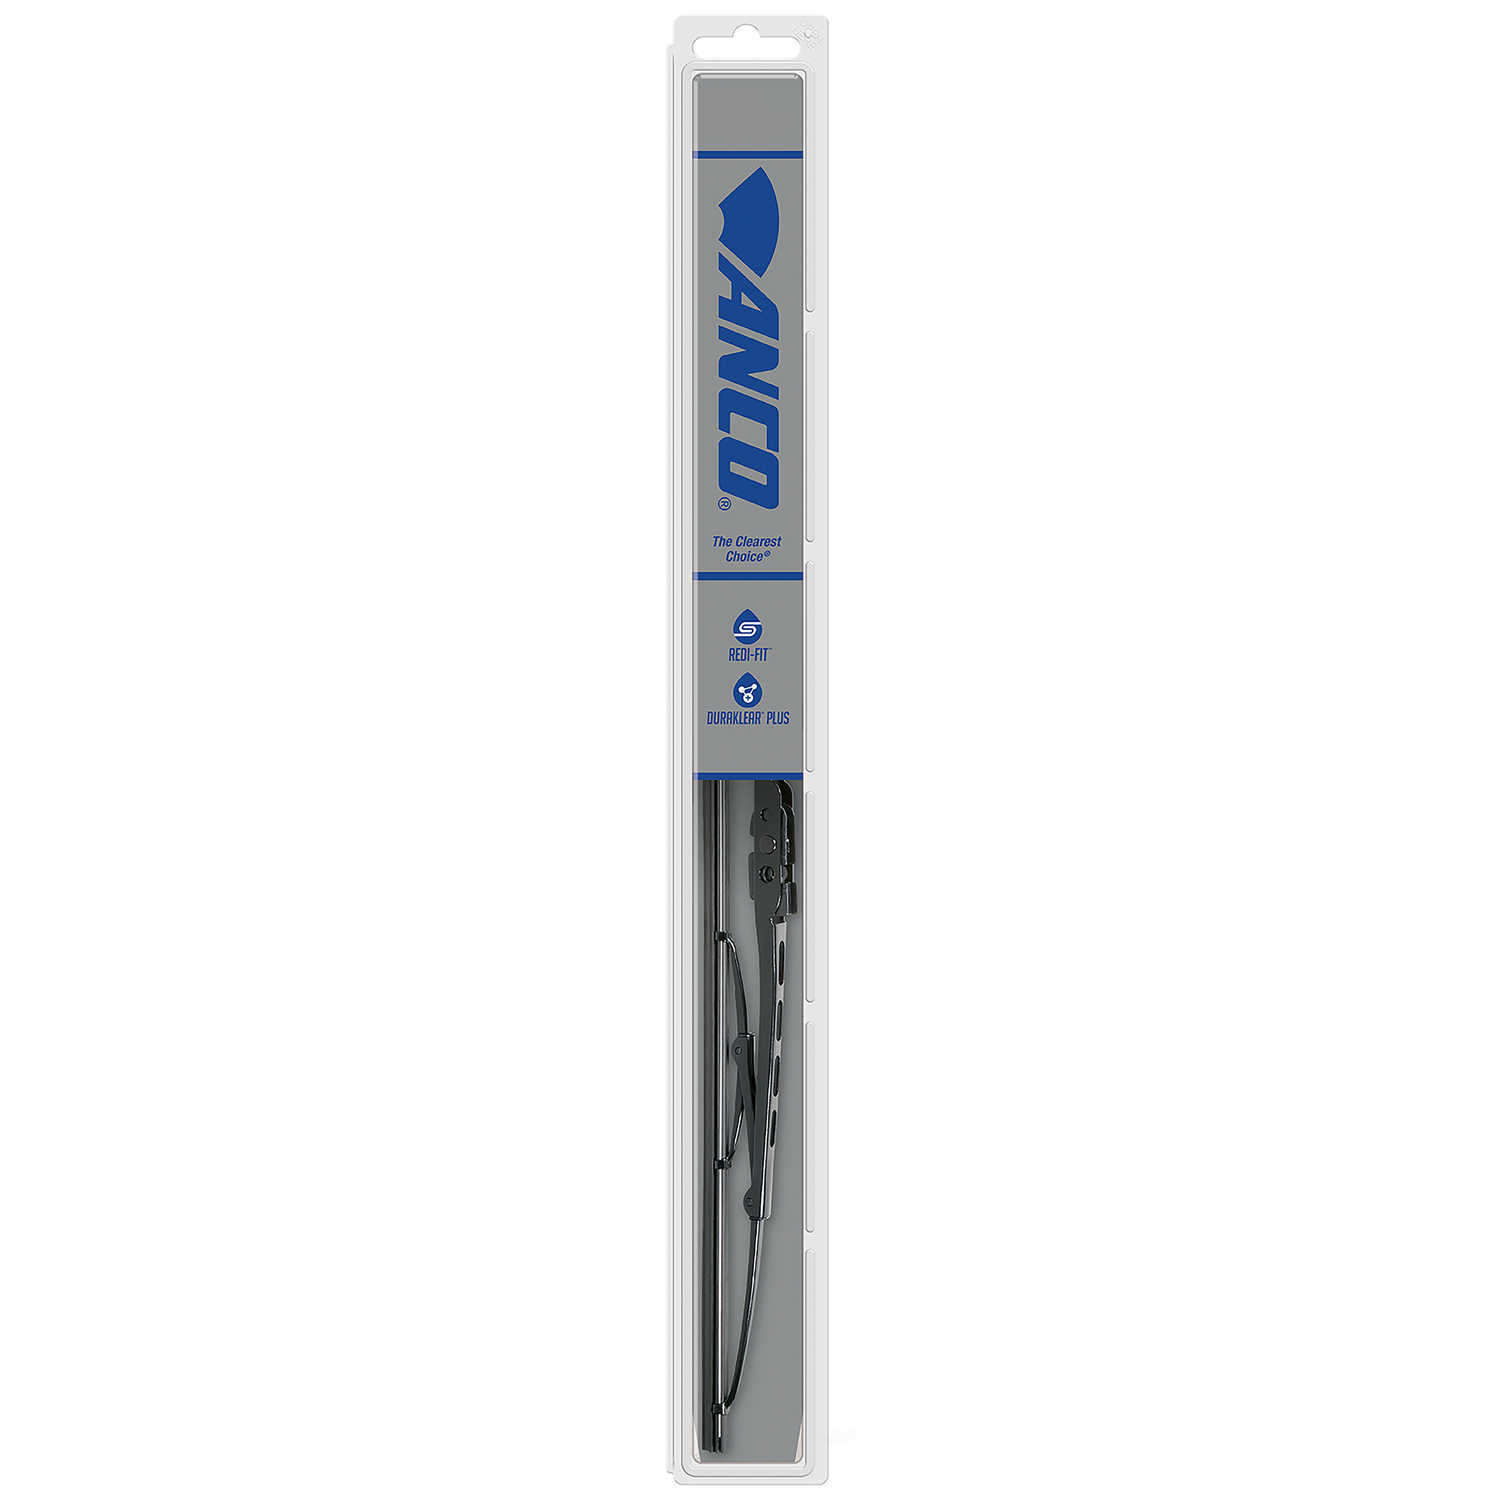 ANCO WIPER PRODUCTS - ANCO 97-Series Wiper Blade - ANC 97-22